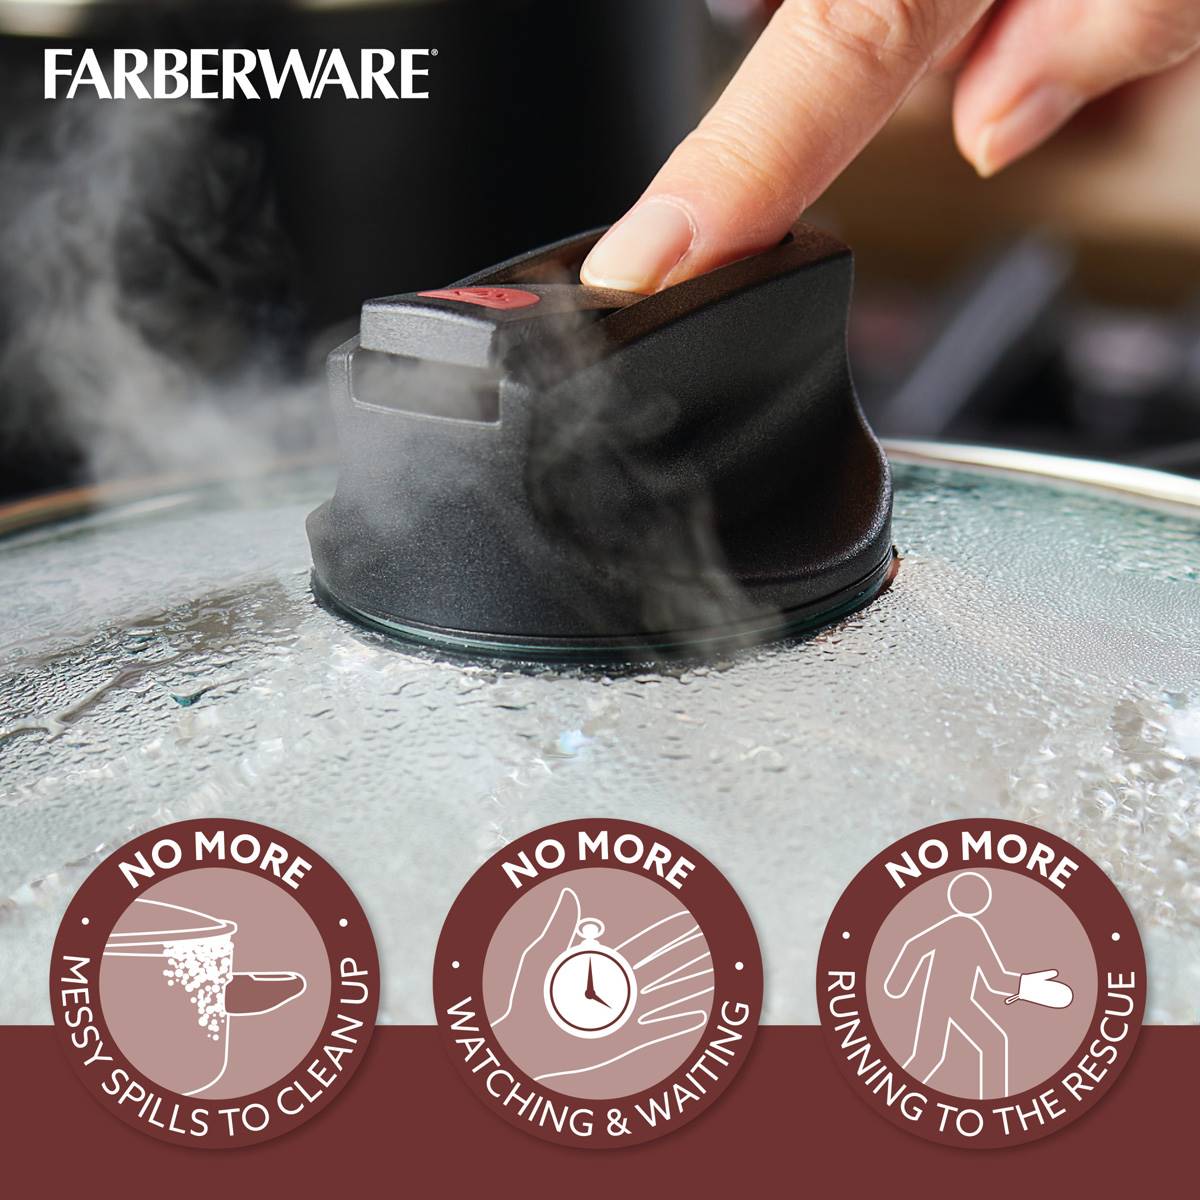 Farberware(R) Smart Control(tm) 14pc. Aluminum Nonstick Cookware Set